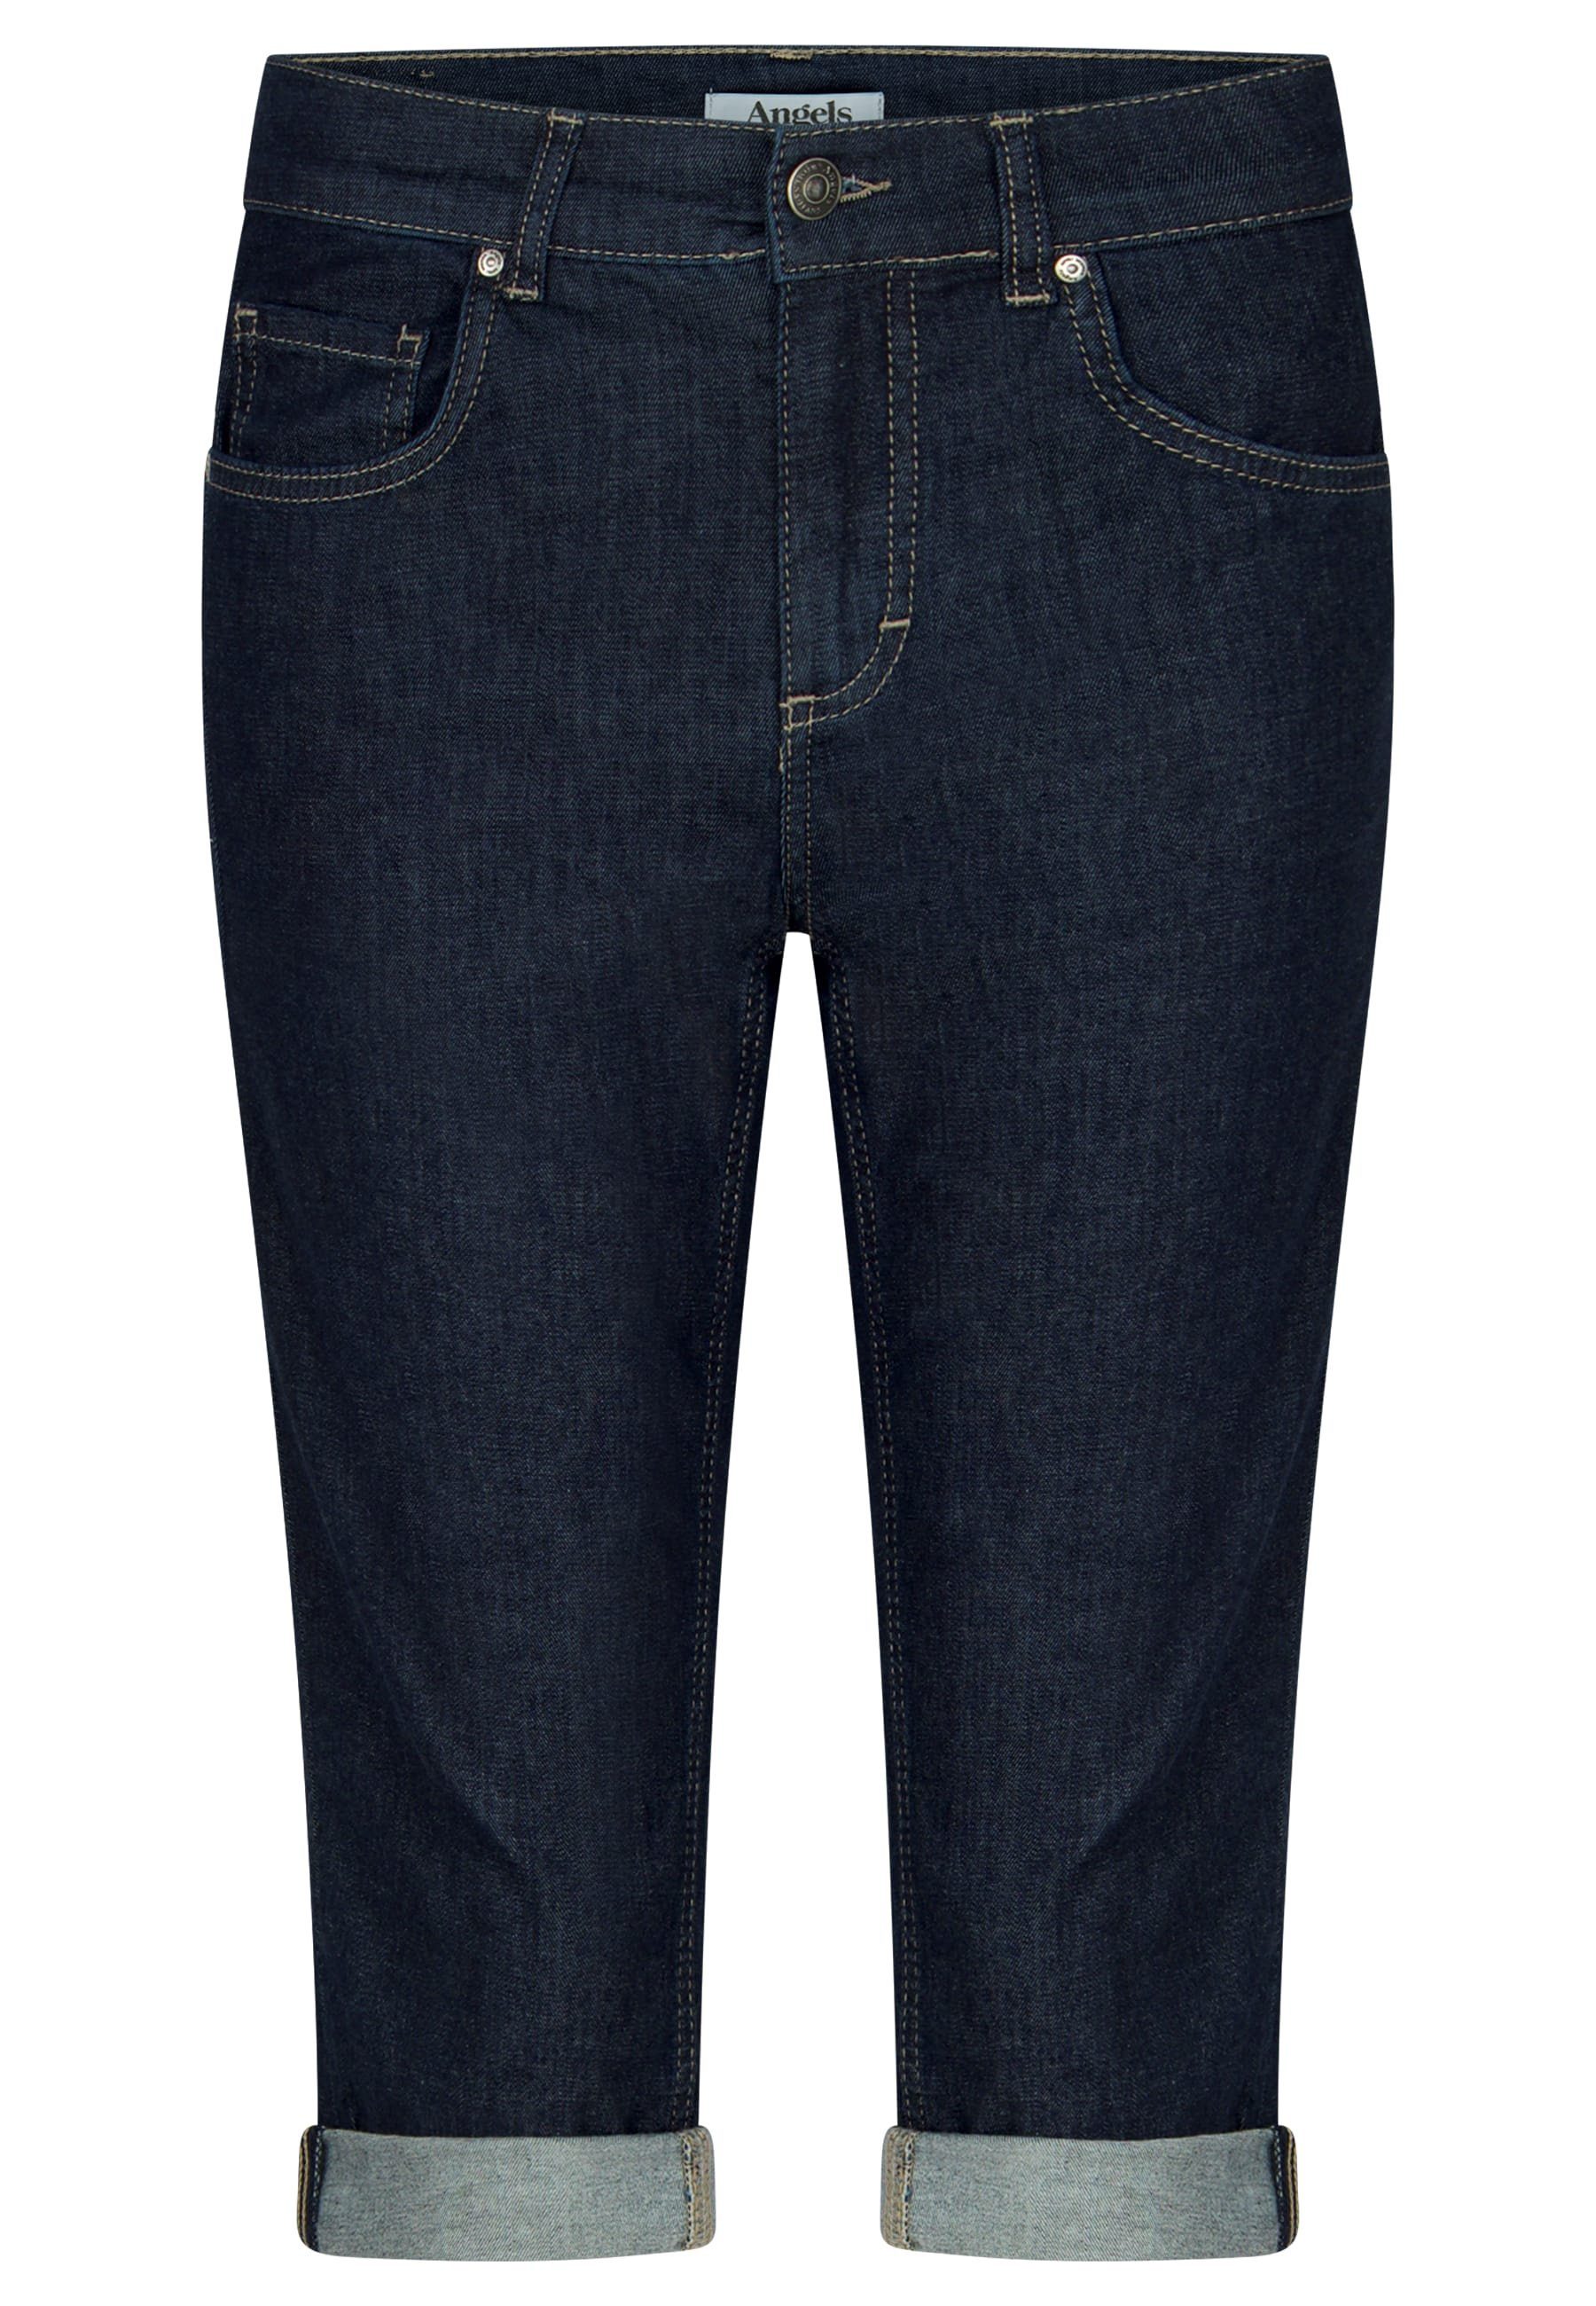 Jeans Label-Applikationen ANGELS mit mit Used-Look TU 5-Pocket-Jeans blau Capri